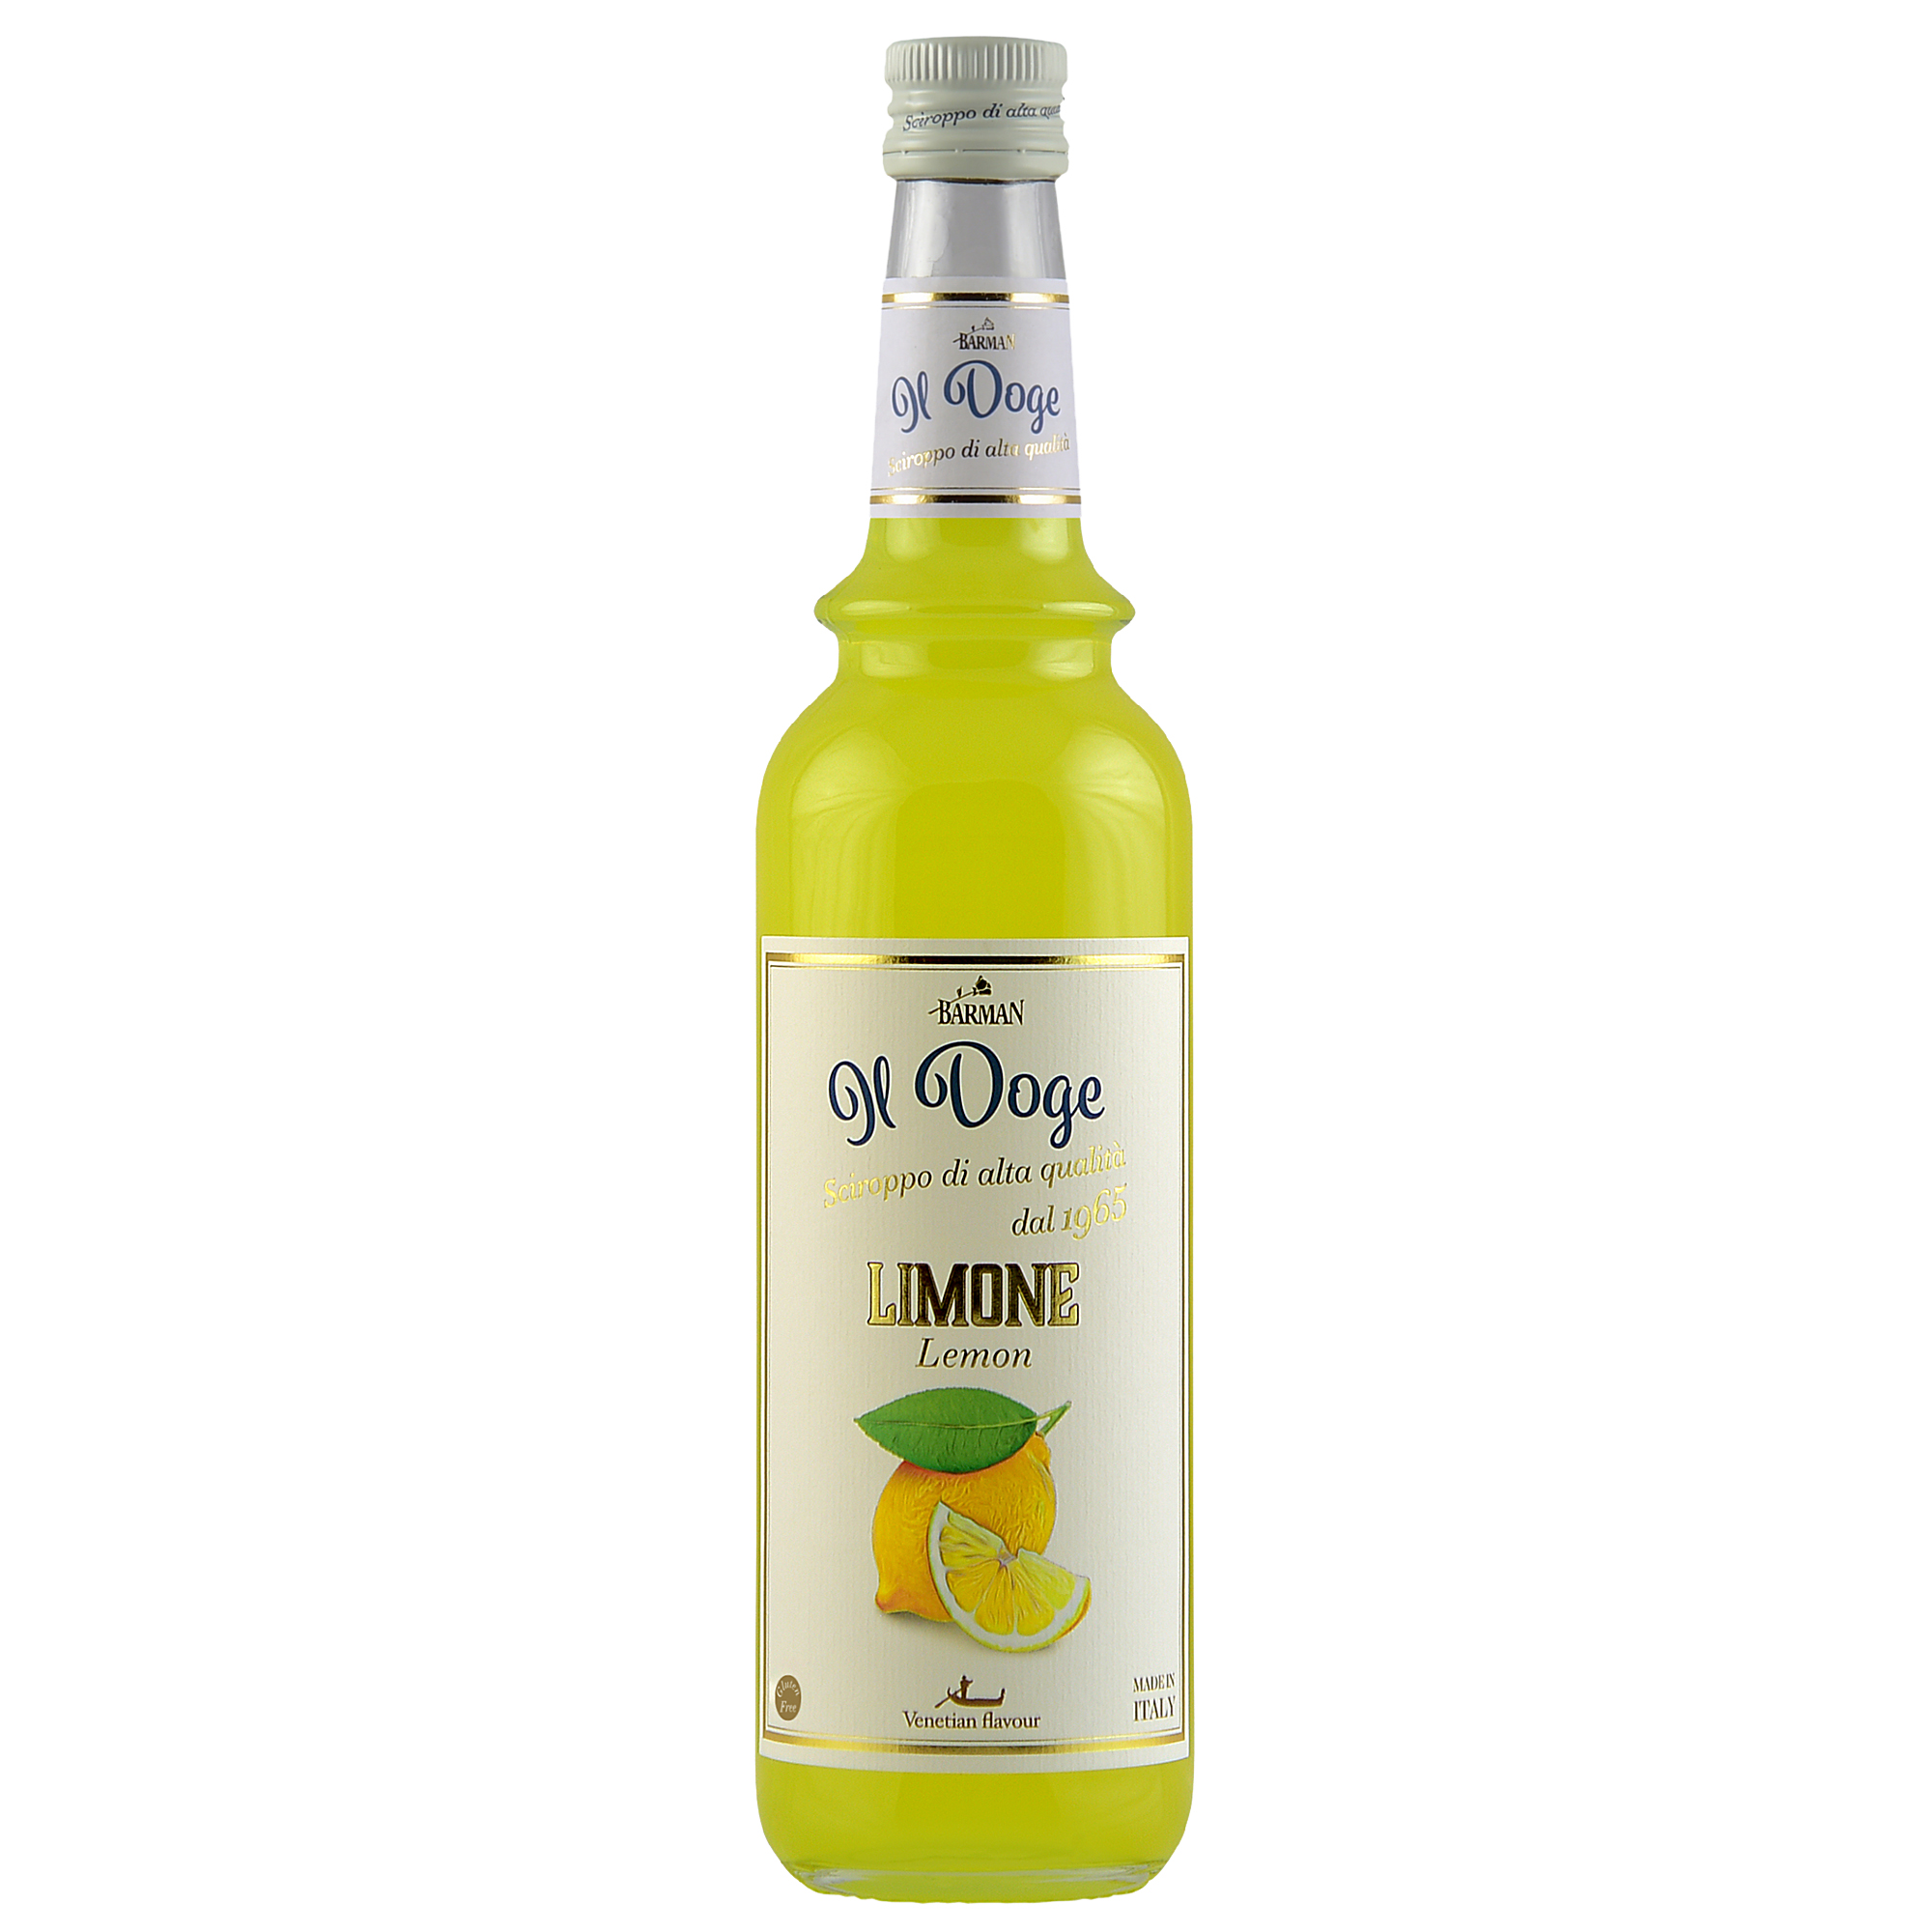 Il Doge Sirup Zitrone - Lemon / 0,7 ltr. Alkoholfrei / Glutenfrei / Halal